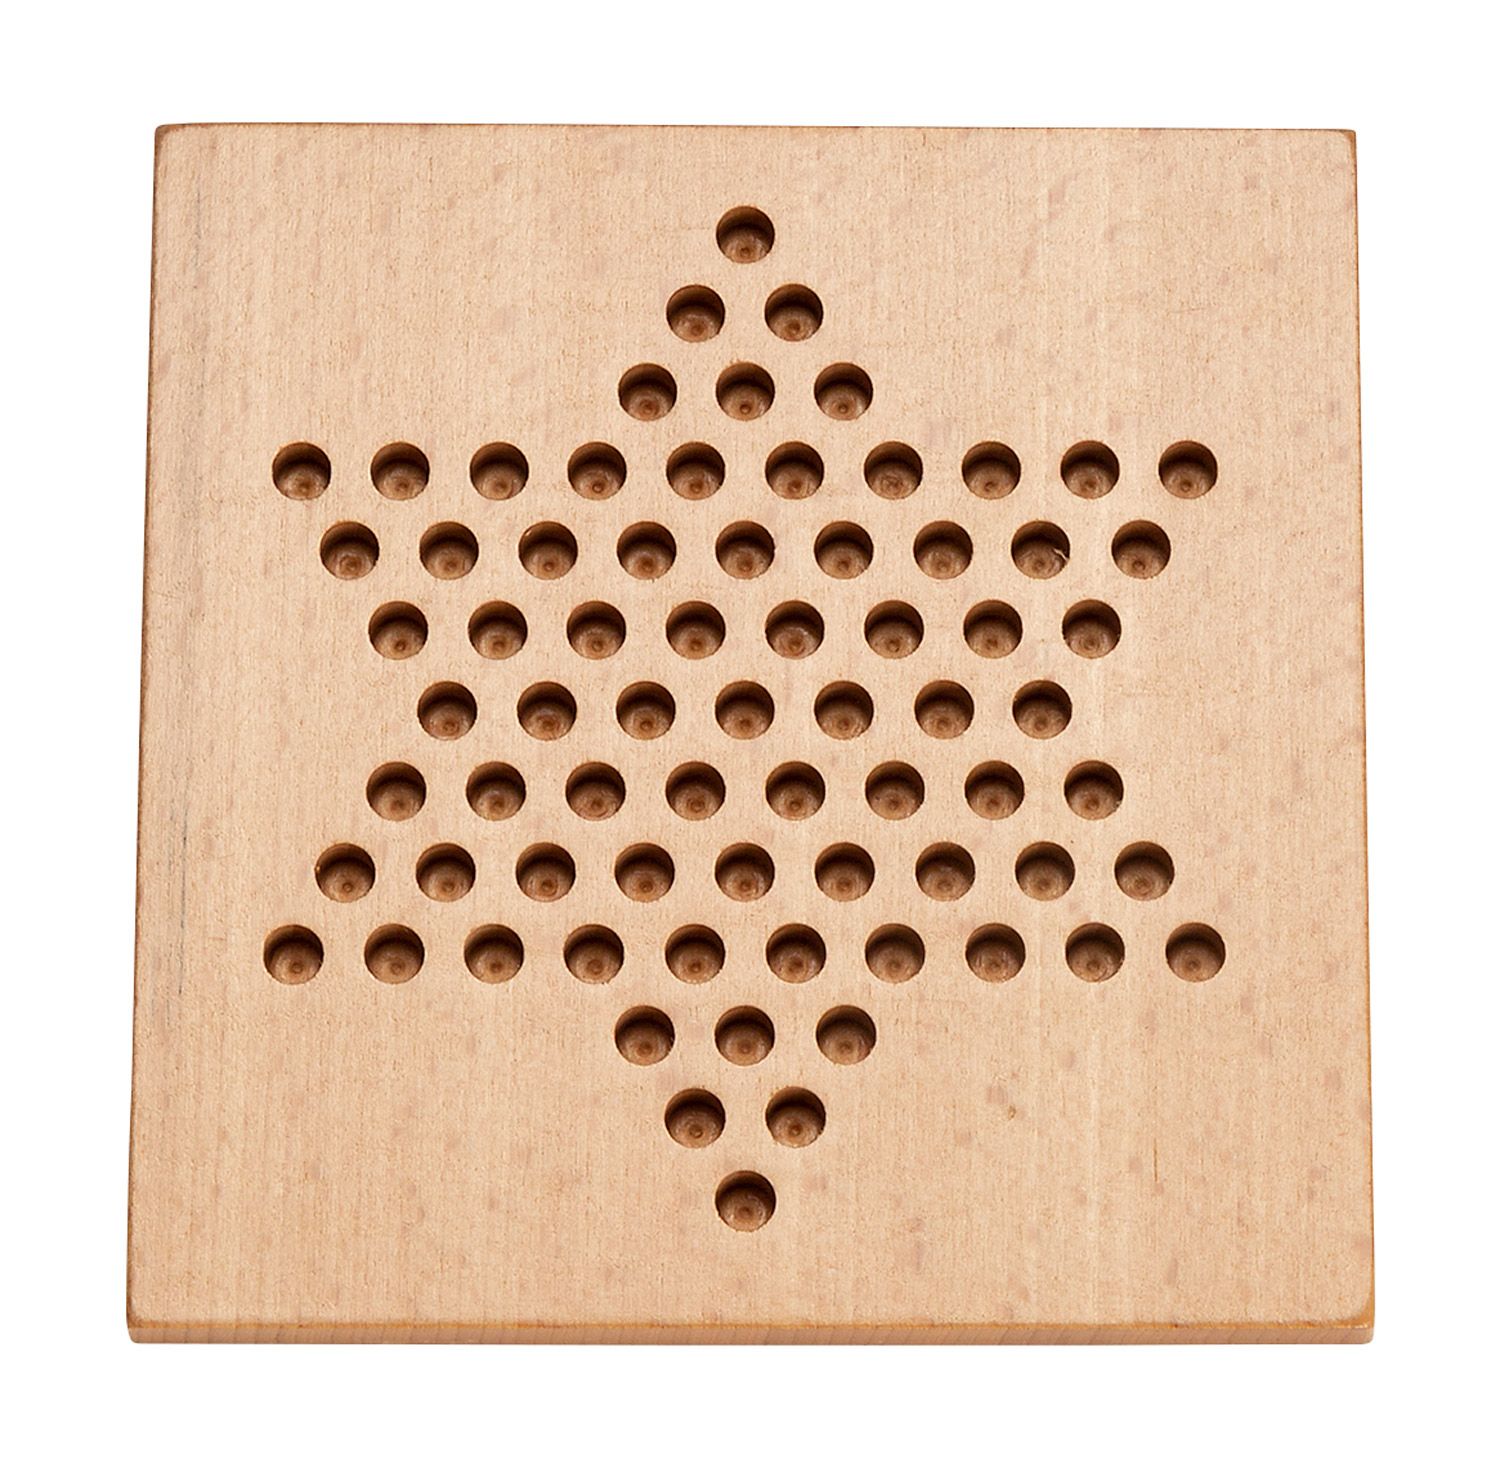 Pennenbord hout stervormig bord van 15 x 15 cm voor pennen van 7 mm Ø - 001211